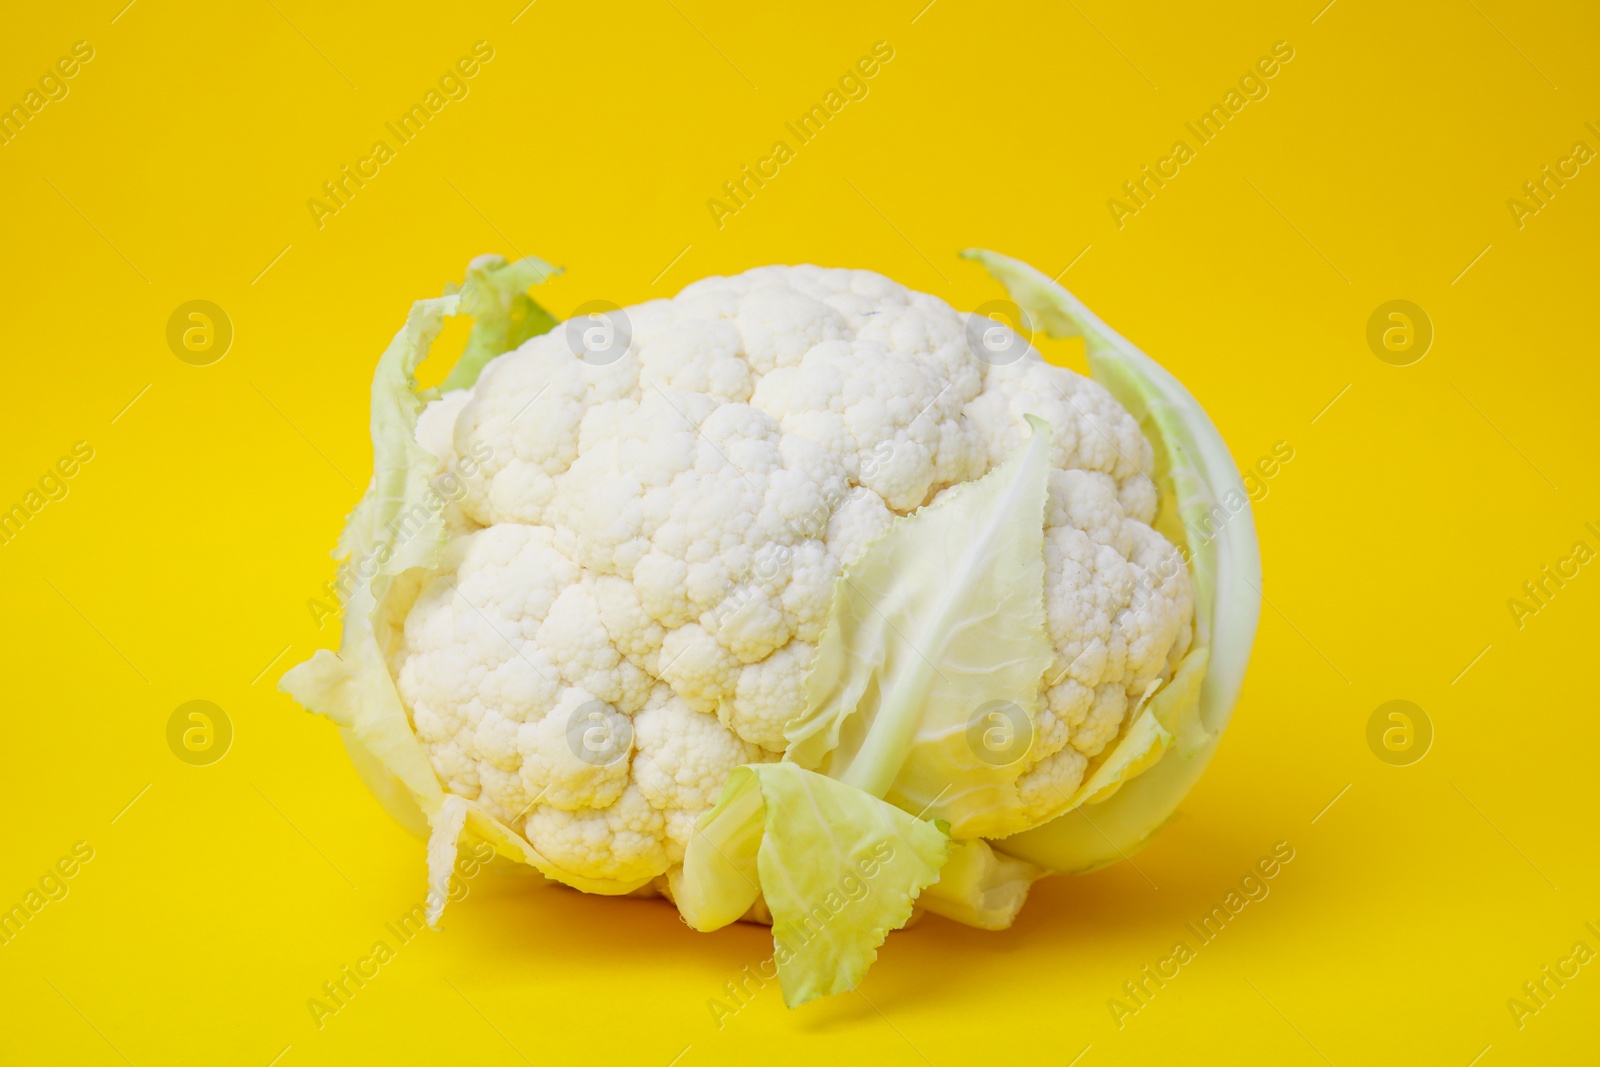 Photo of Whole fresh raw cauliflower on yellow background